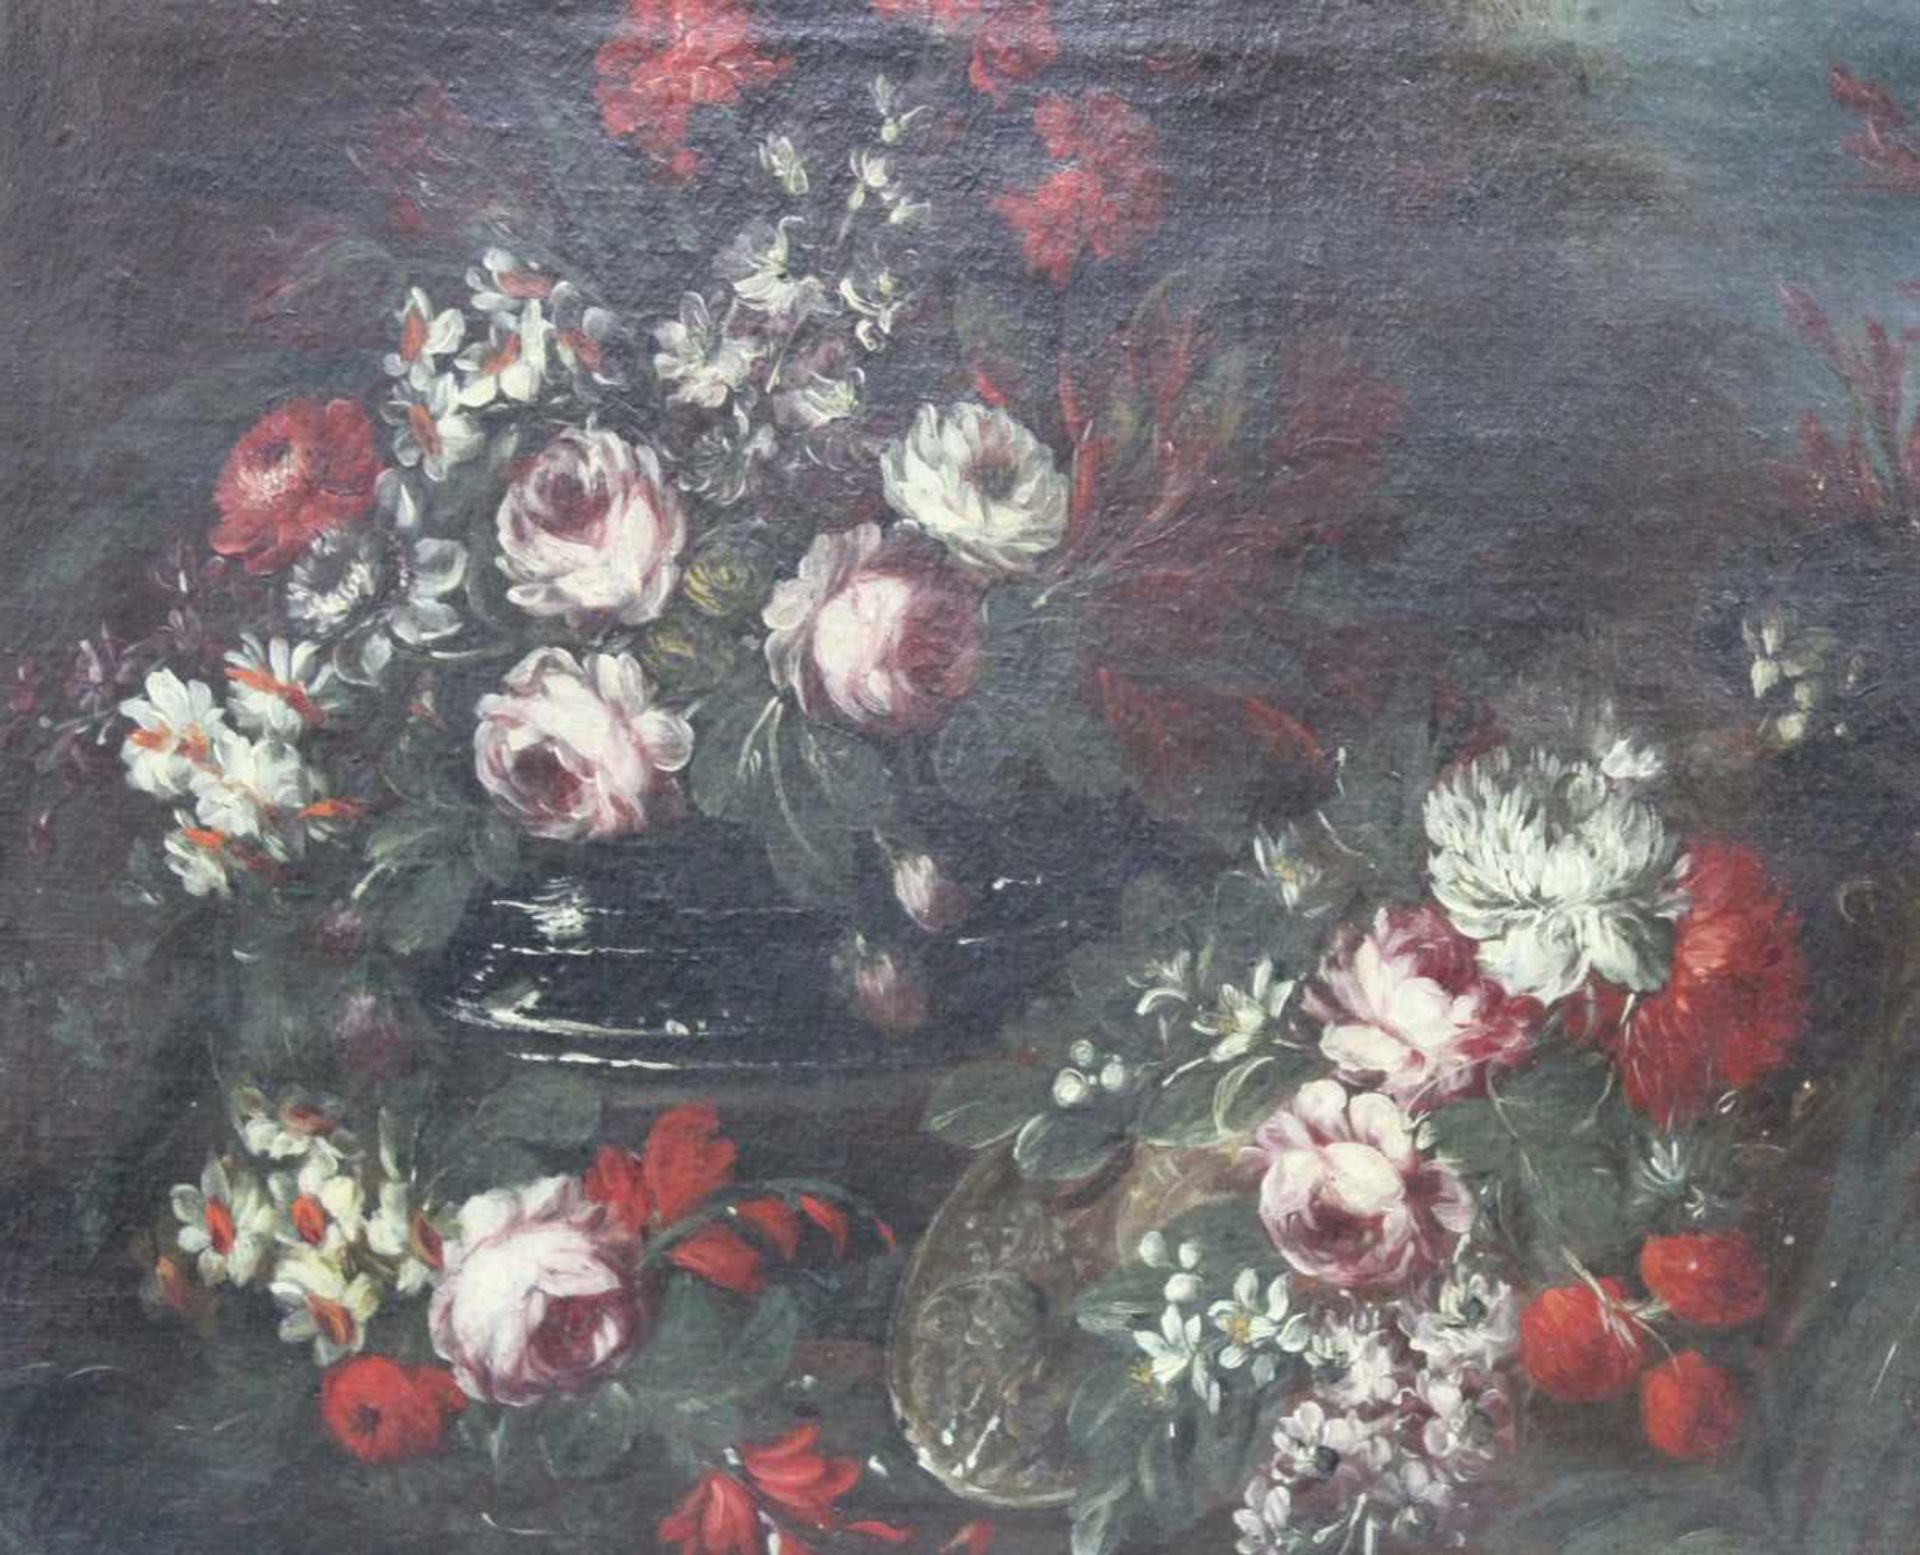 UNSIGNIERT (XVIII). Blumenstillleben. Ende 18. Jahrhundert. 53 cm x 73 cm. Gemälde, Öl auf Leinwand. - Bild 3 aus 5